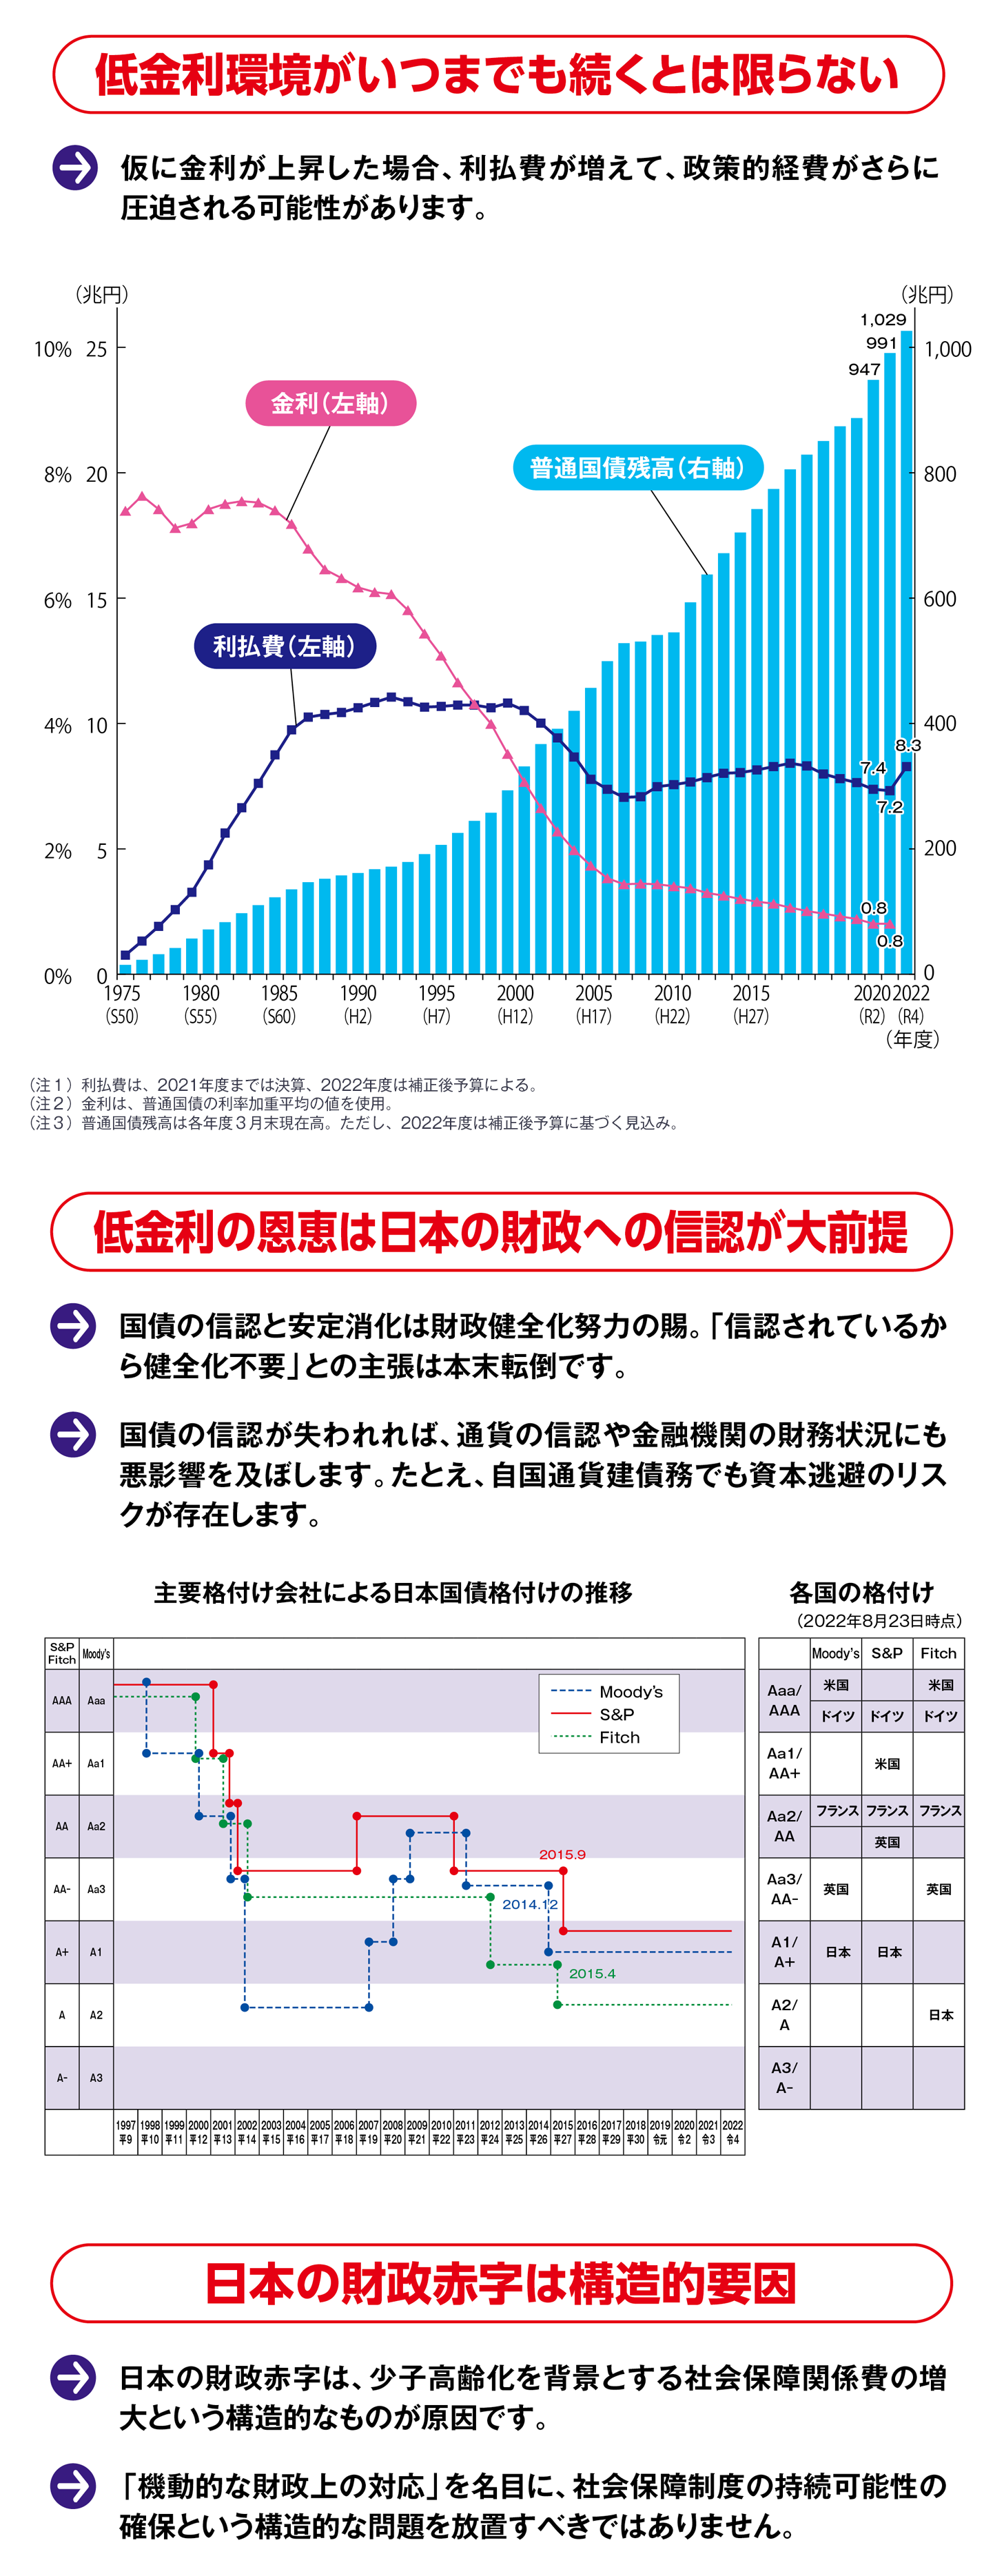 図・1975年から2022年までの金利、利払費、普通国債残高のグラフ、図・1997年から2022年までの主要格付け会社による日本国債格付けの推移のグラフ